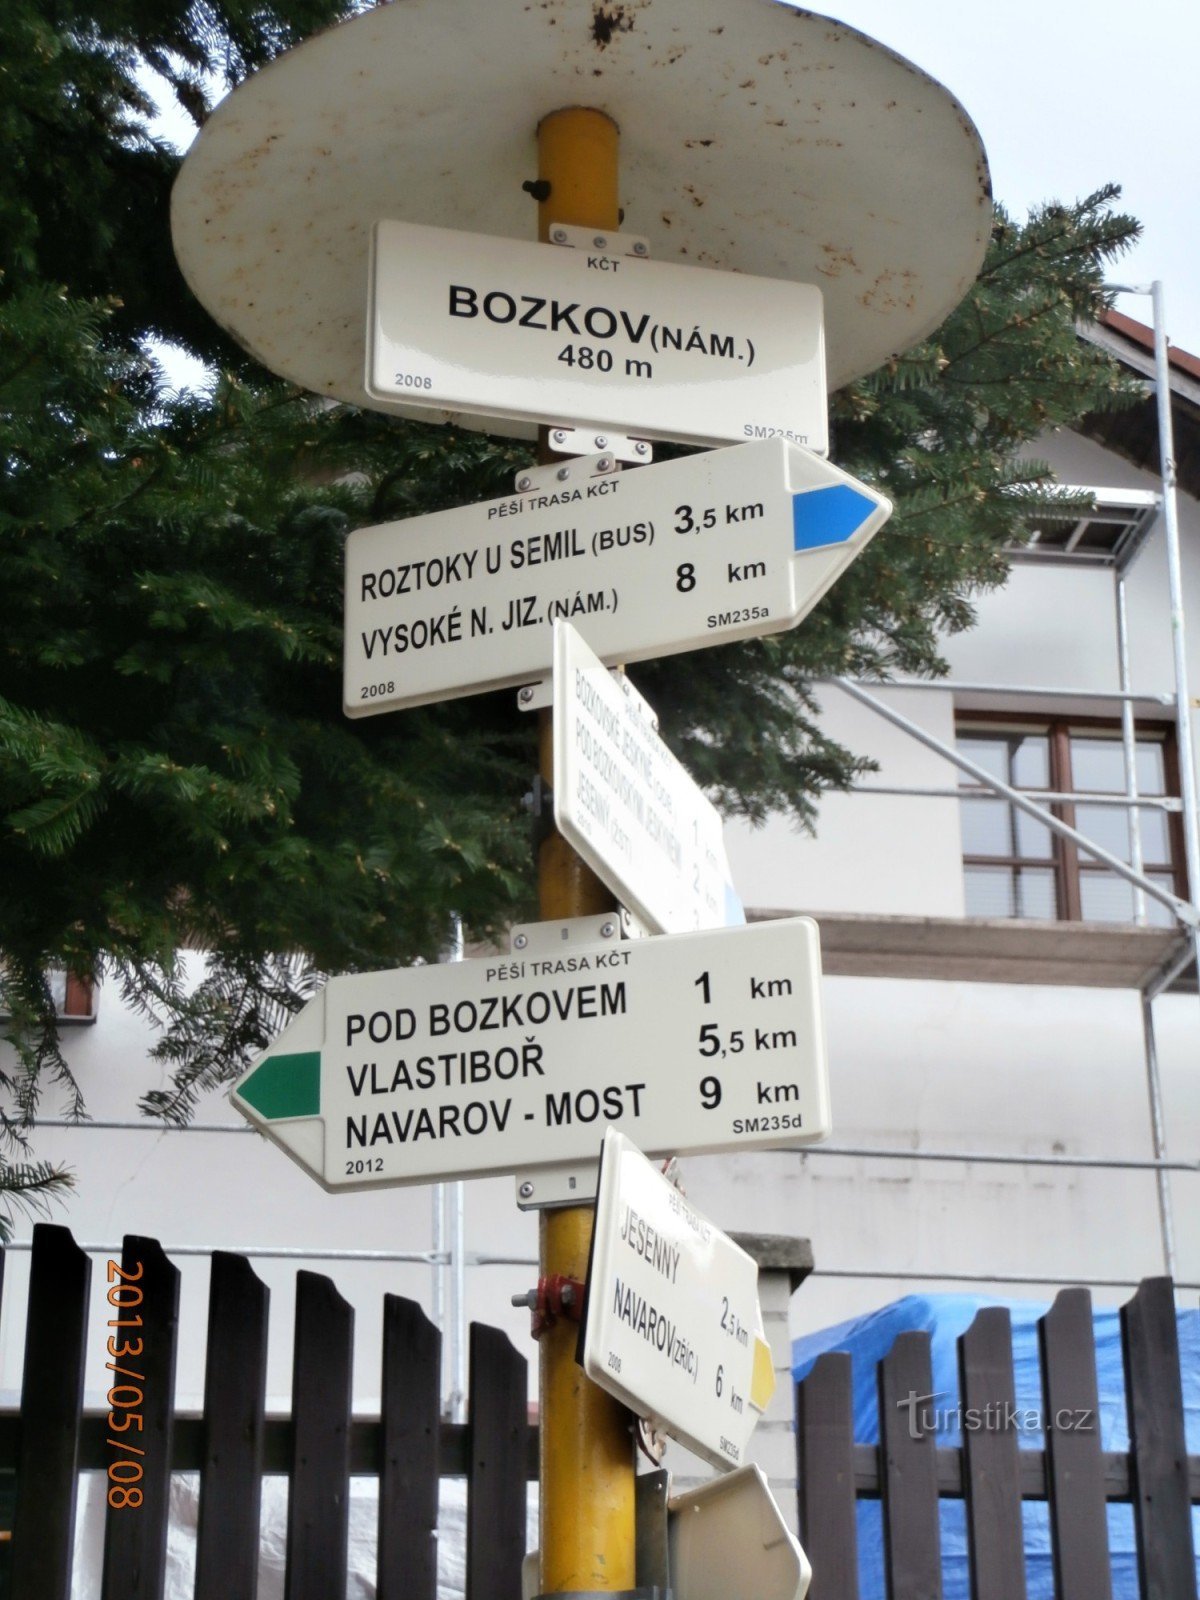 Đến Návarov qua Bozkov